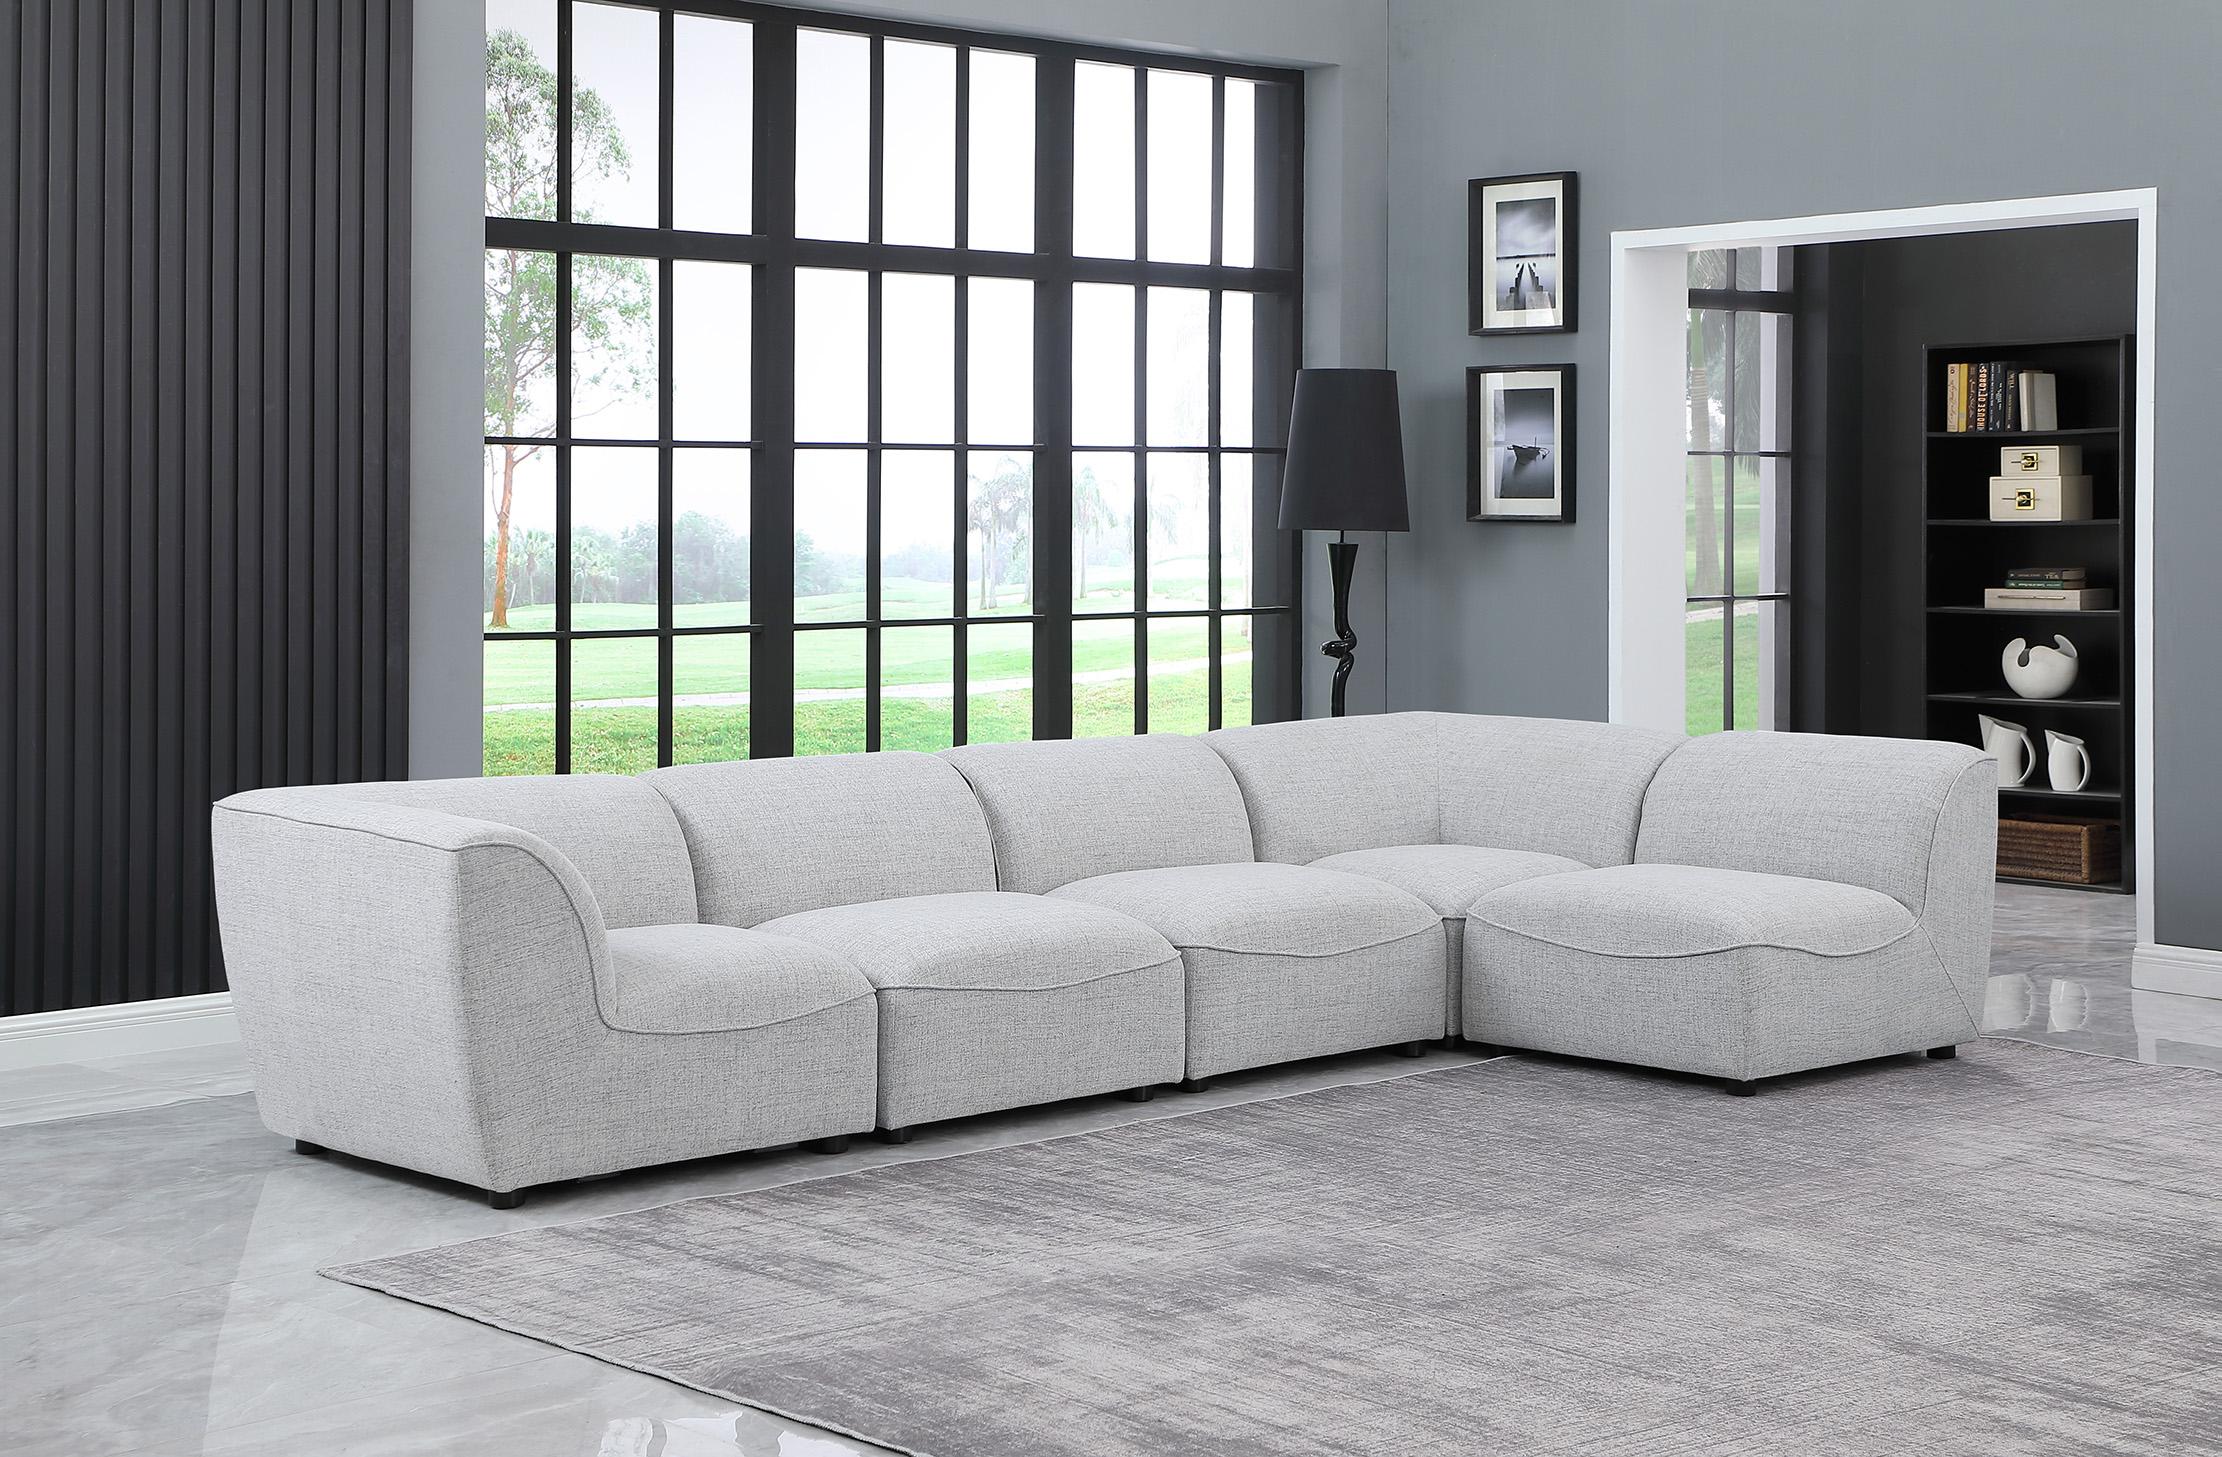 

    
Meridian Furniture MIRAMAR 683Grey-Sec5D Modular Sectional Sofa Gray 683Grey-Sec5D
